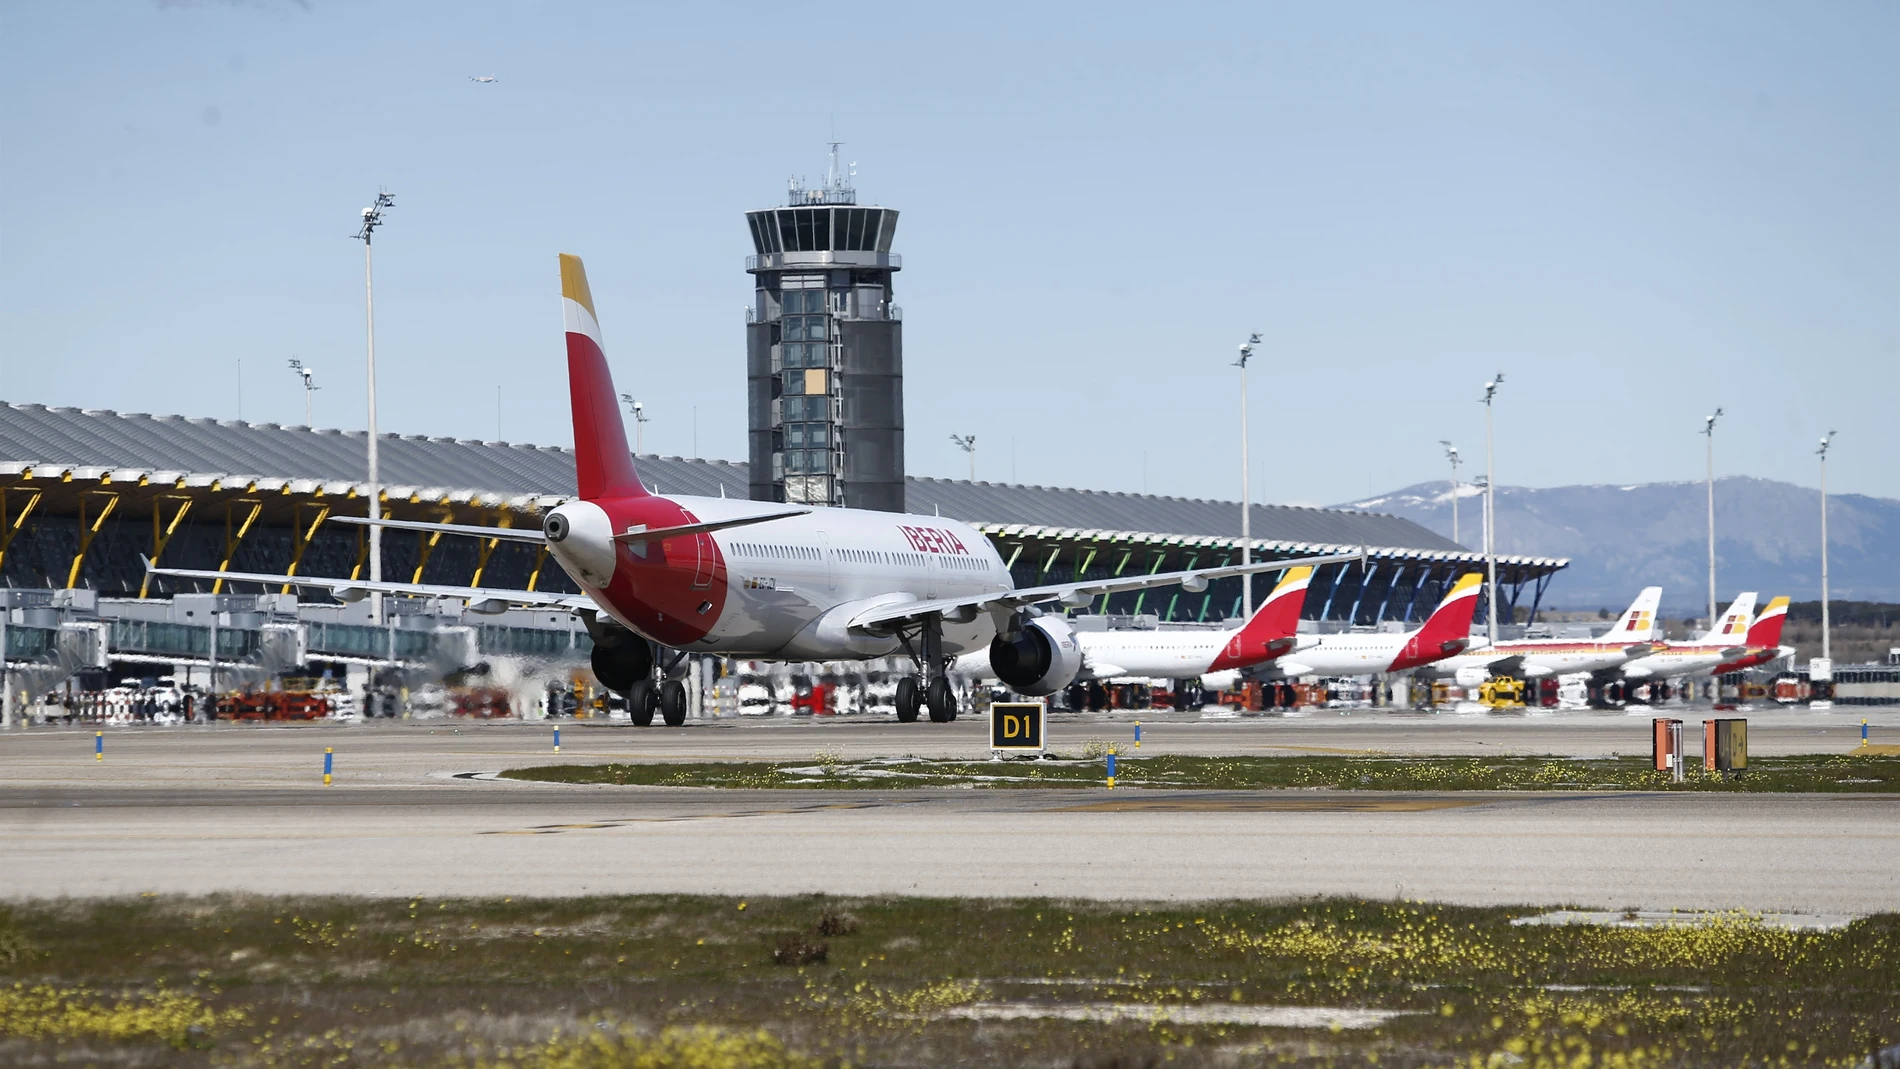 Economía/Turismo.- Madrid-Barajas, a la cabeza de los aeropuertos europeos con más aviones en tierra, según Eurocontrol